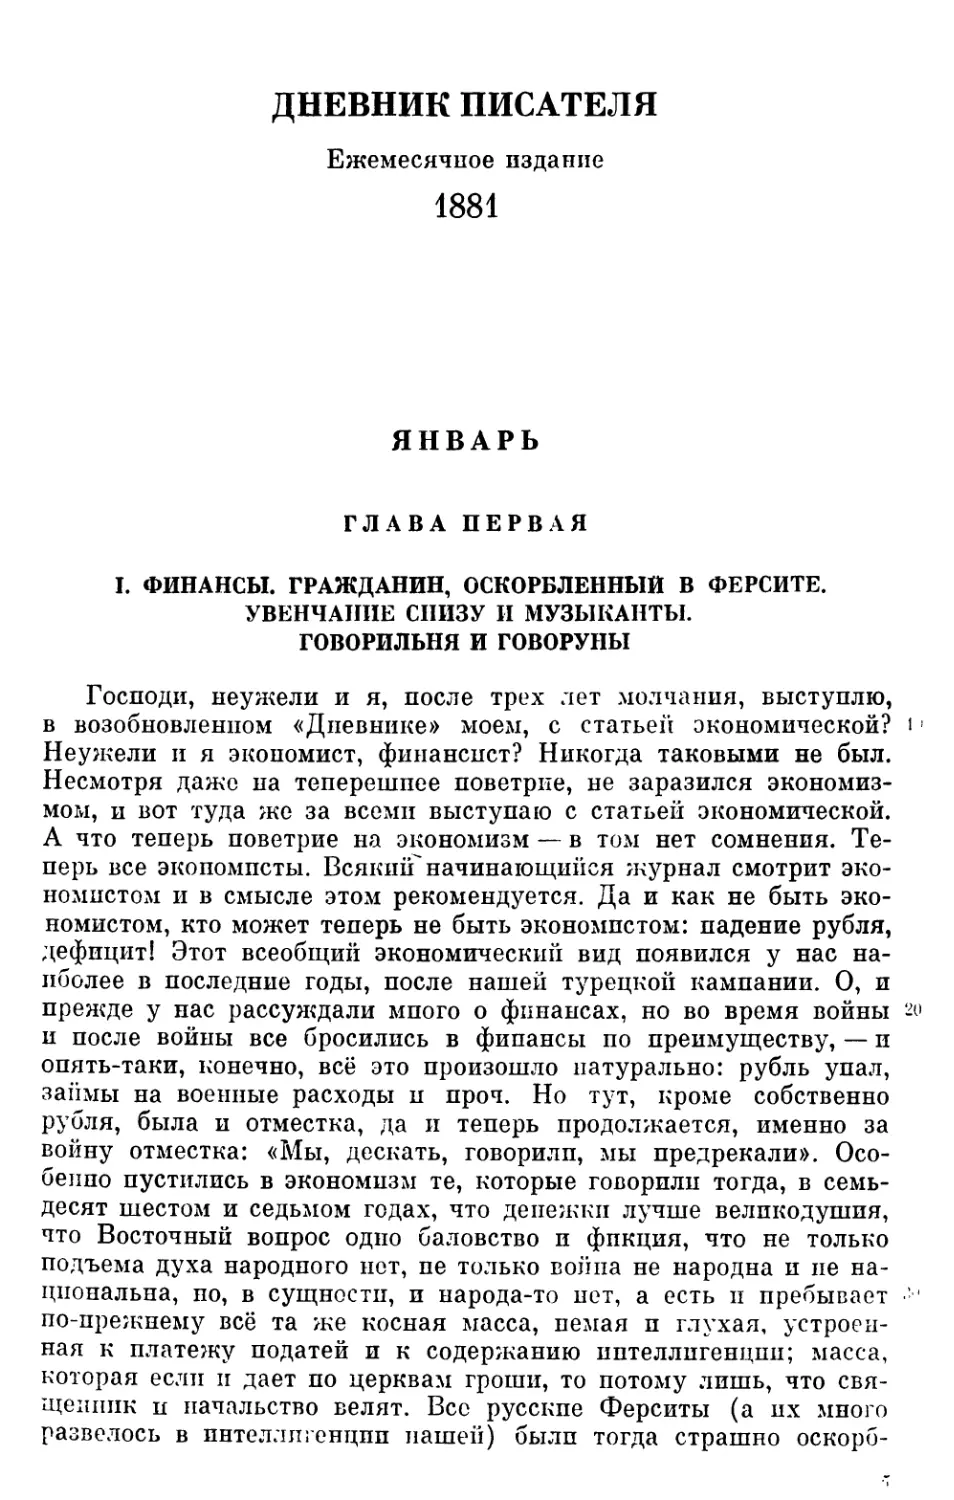 ДНЕВНИК ПИСАТЕЛЯ. 1881
Январь